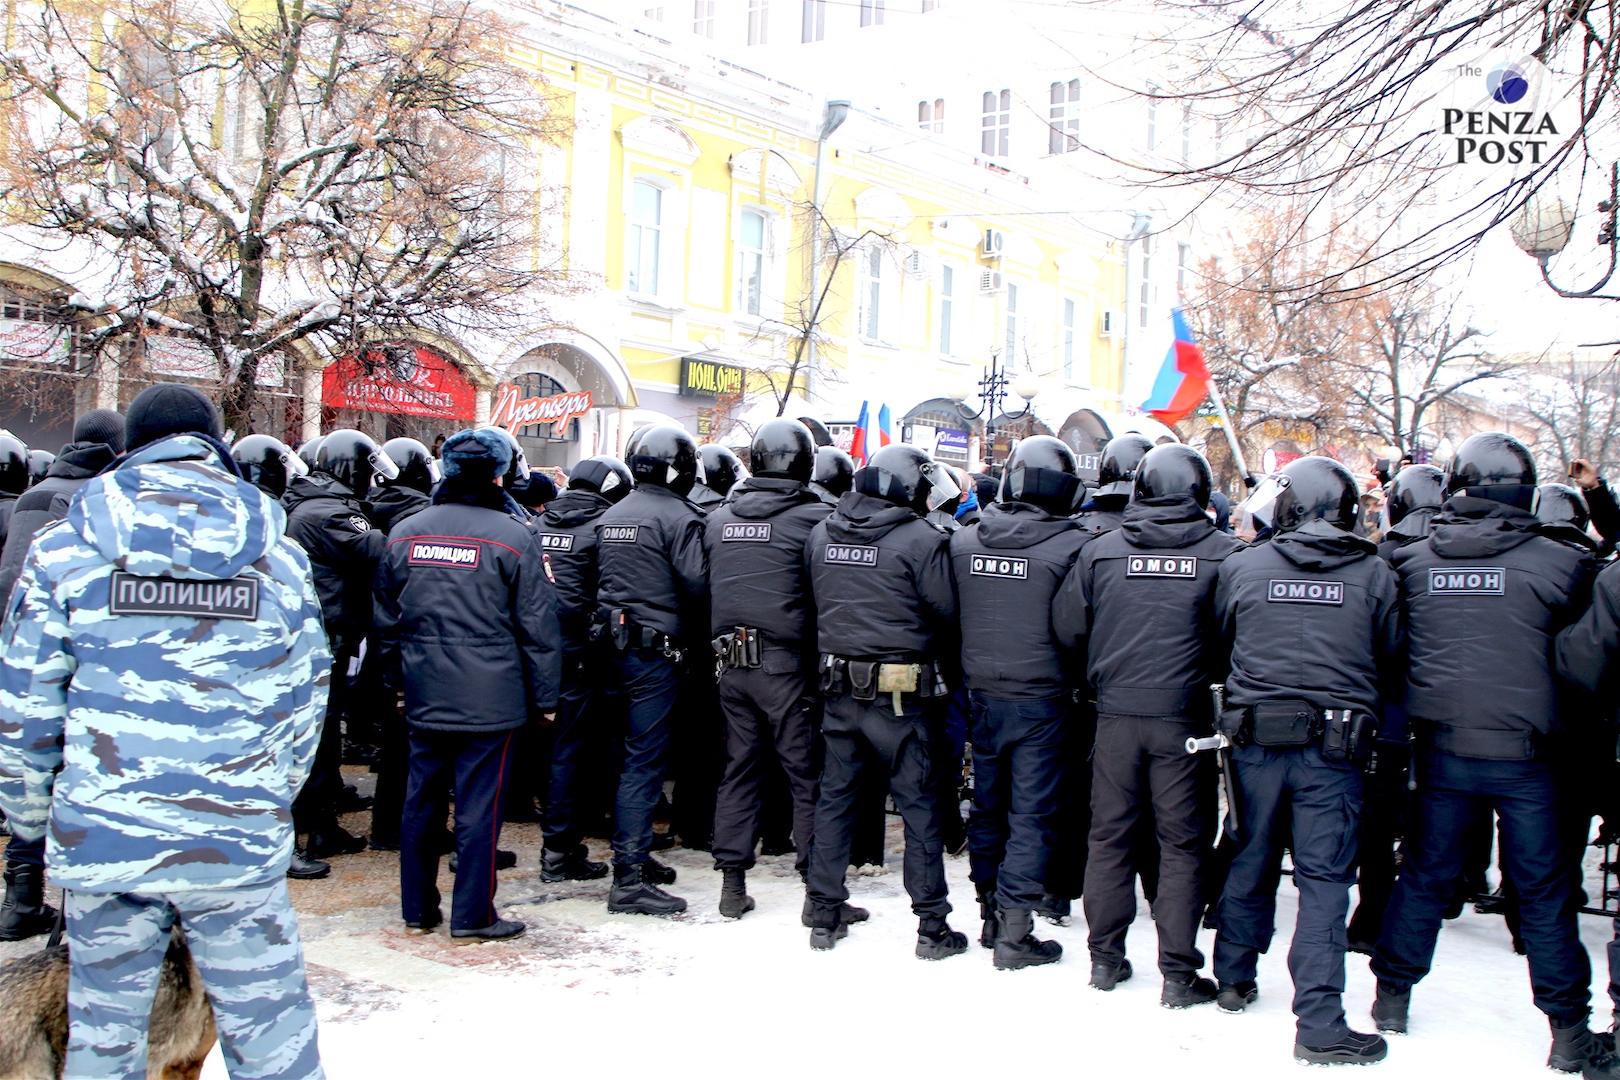 Полиция Пензы подала иск к главе местного штаба Навального на 900 тысяч рублей за то, что силовикам пришлось работать на митинге в выходной